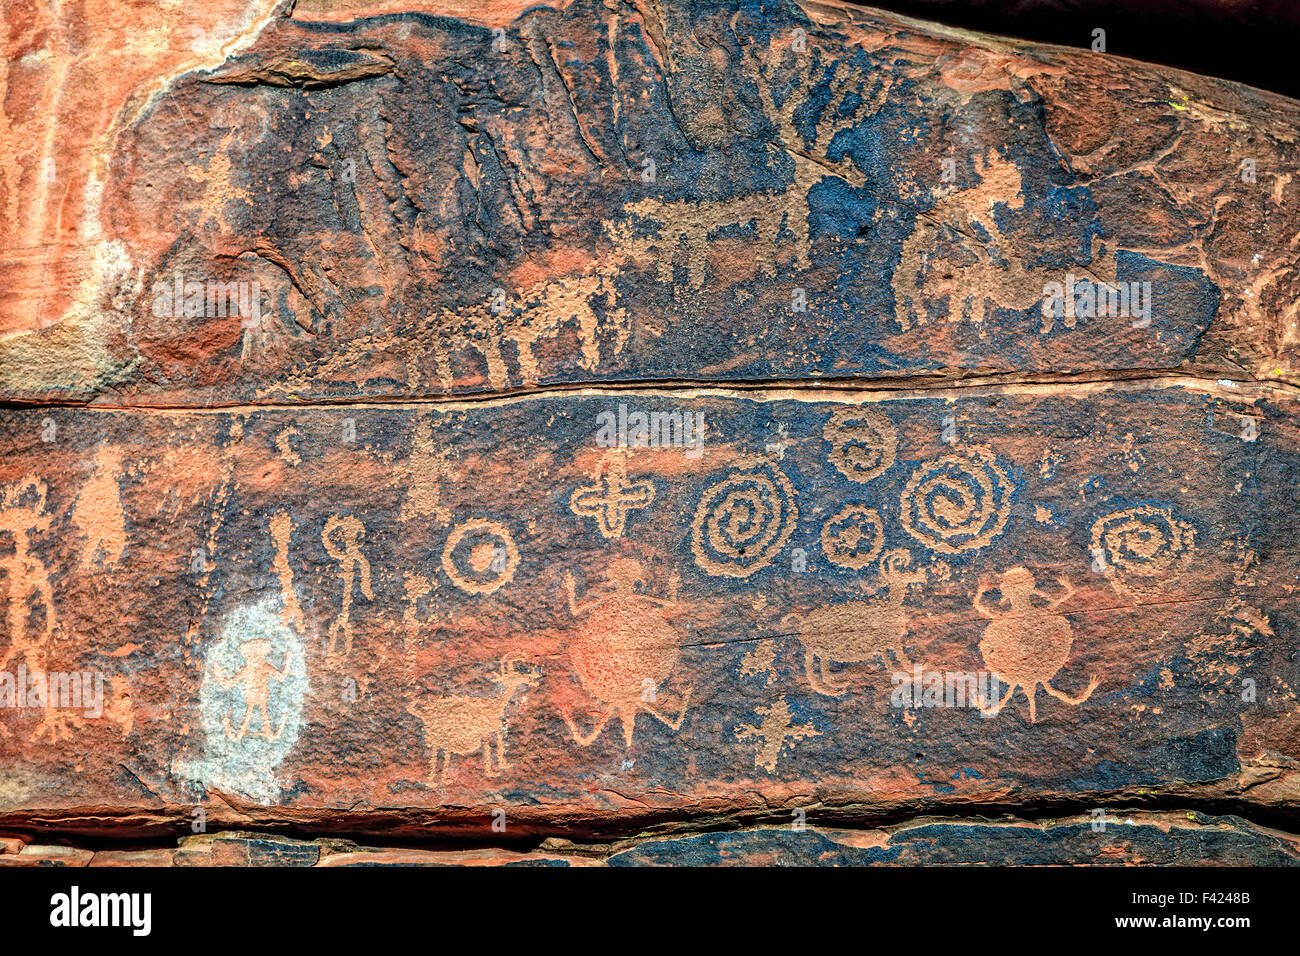 Nahaufnahme Bild der indianische Felszeichnungen auf einer Felswand in der Nähe von Cottonwood, Arizona Stockfoto